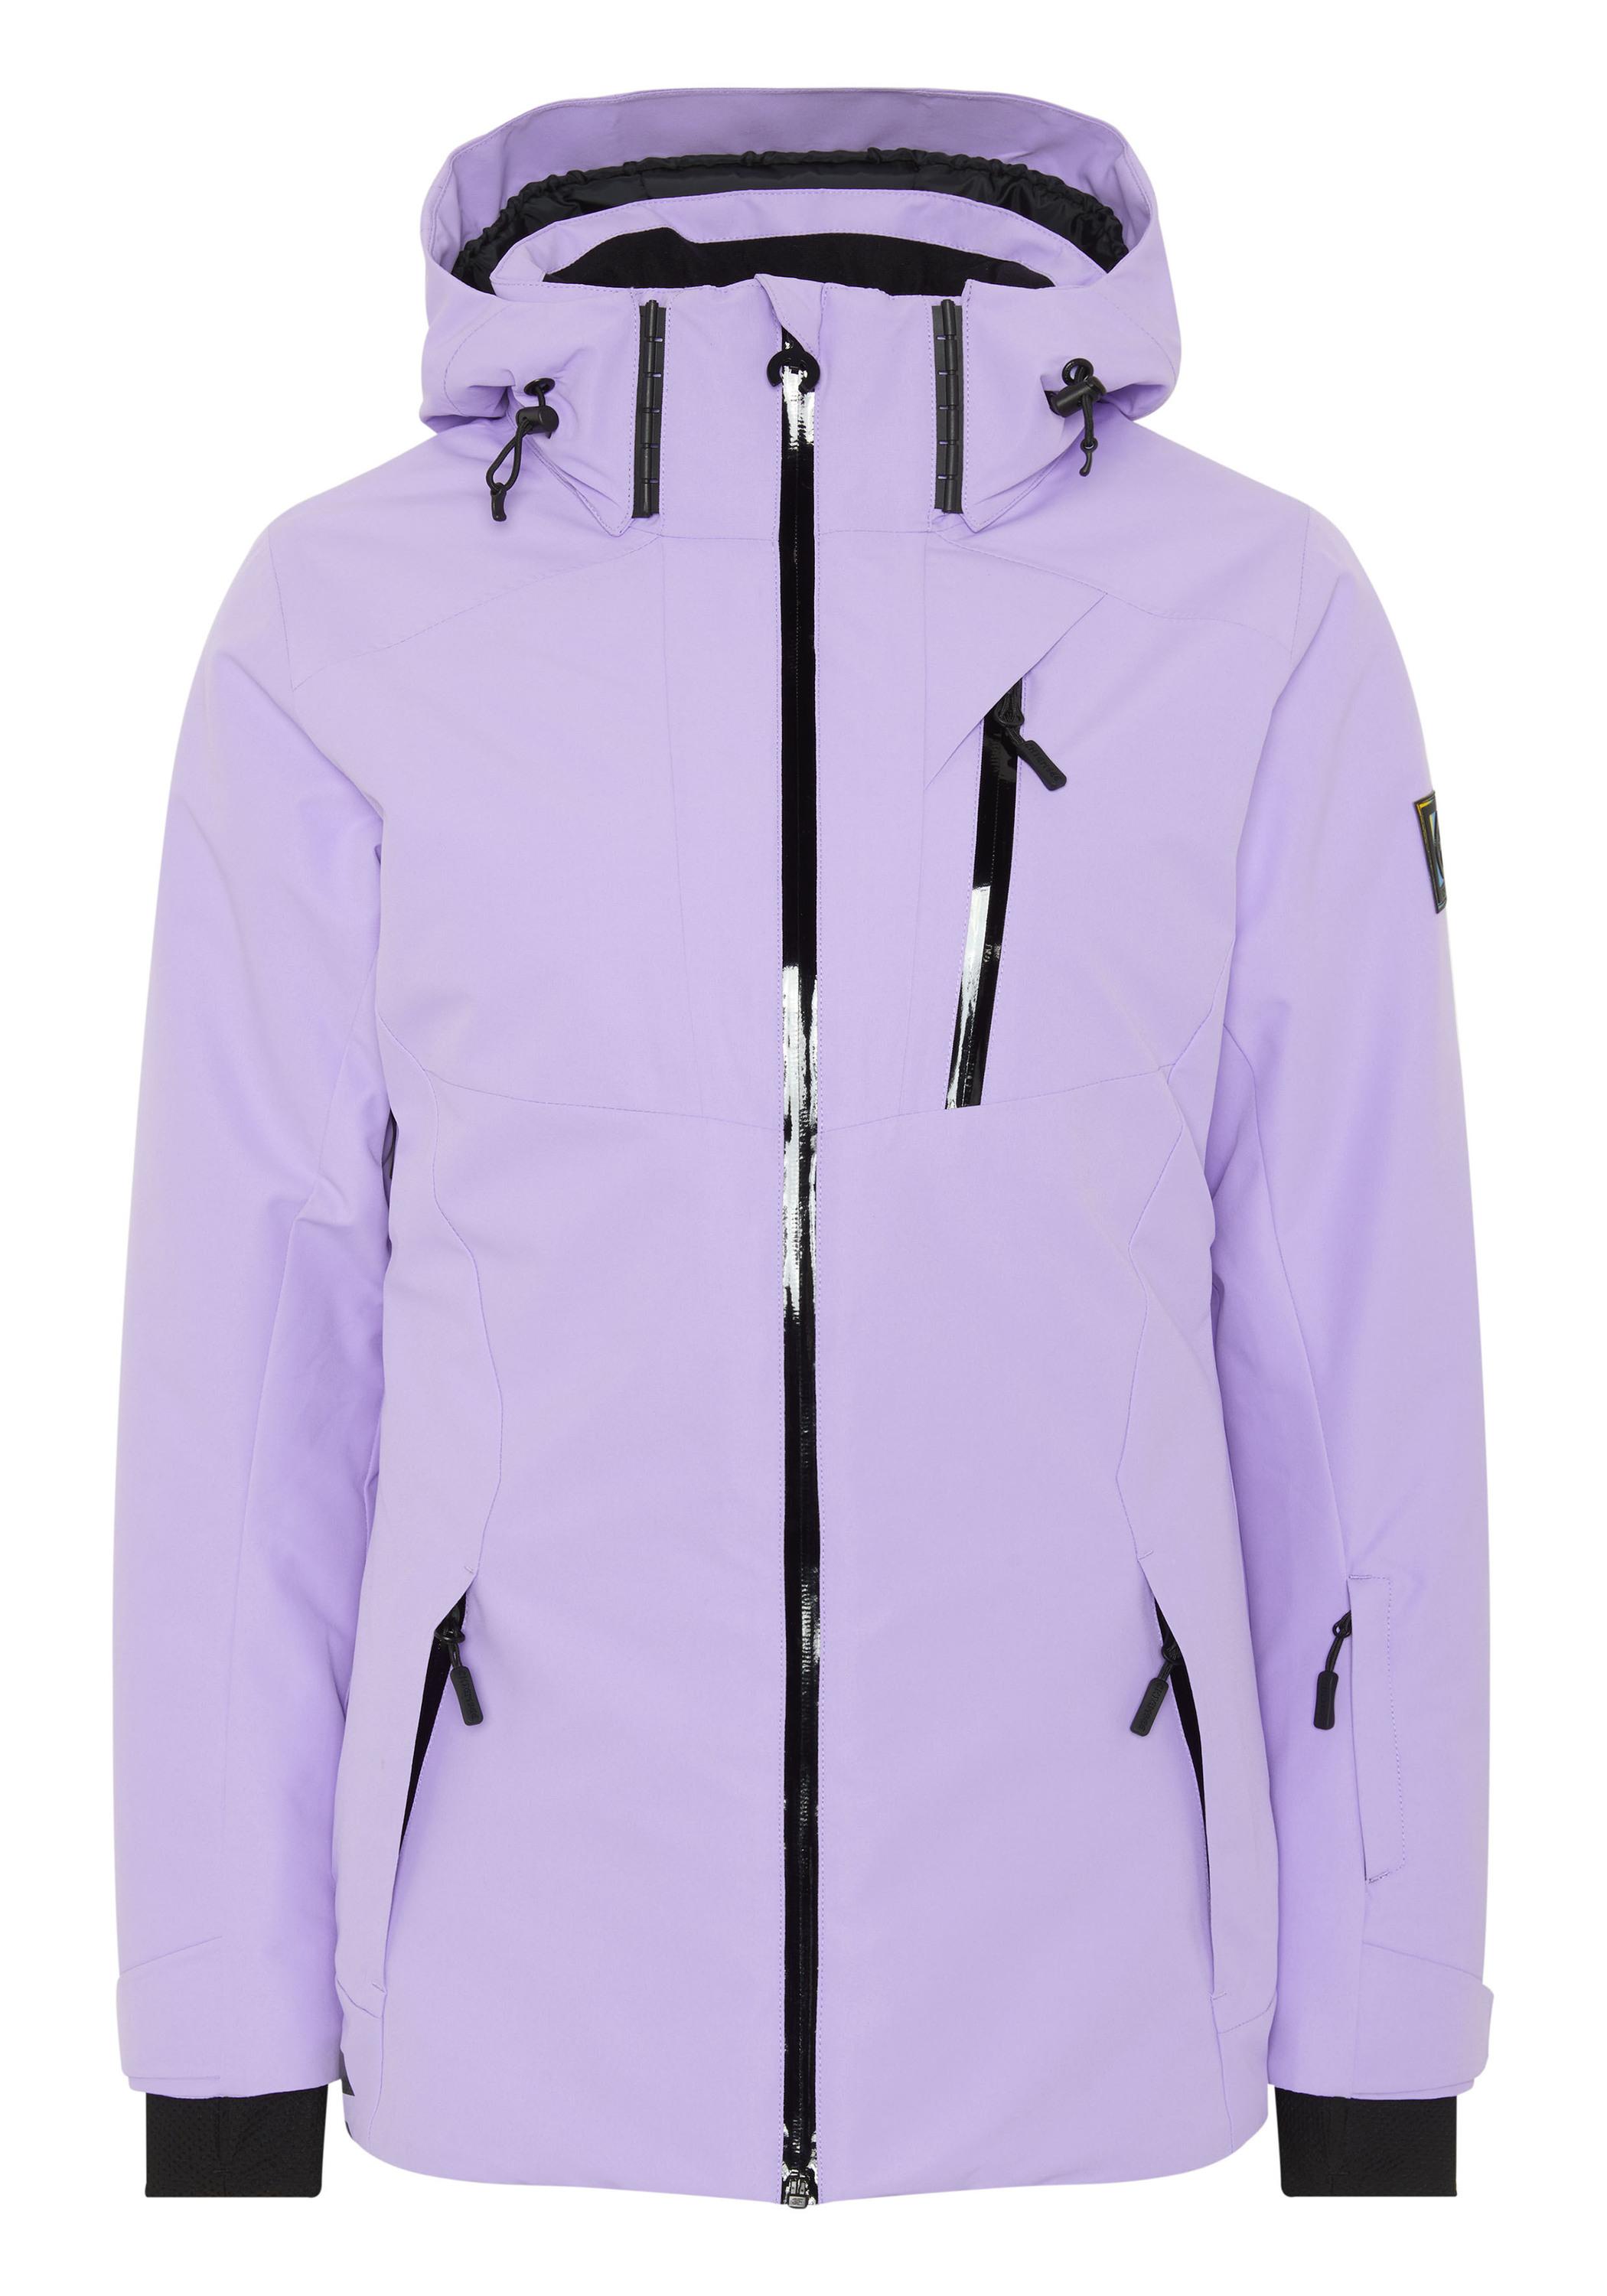 Damen Skijacke von Purple 15-3716 im SportScheck kaufen Chiemsee Online Shop Skijacke Rose